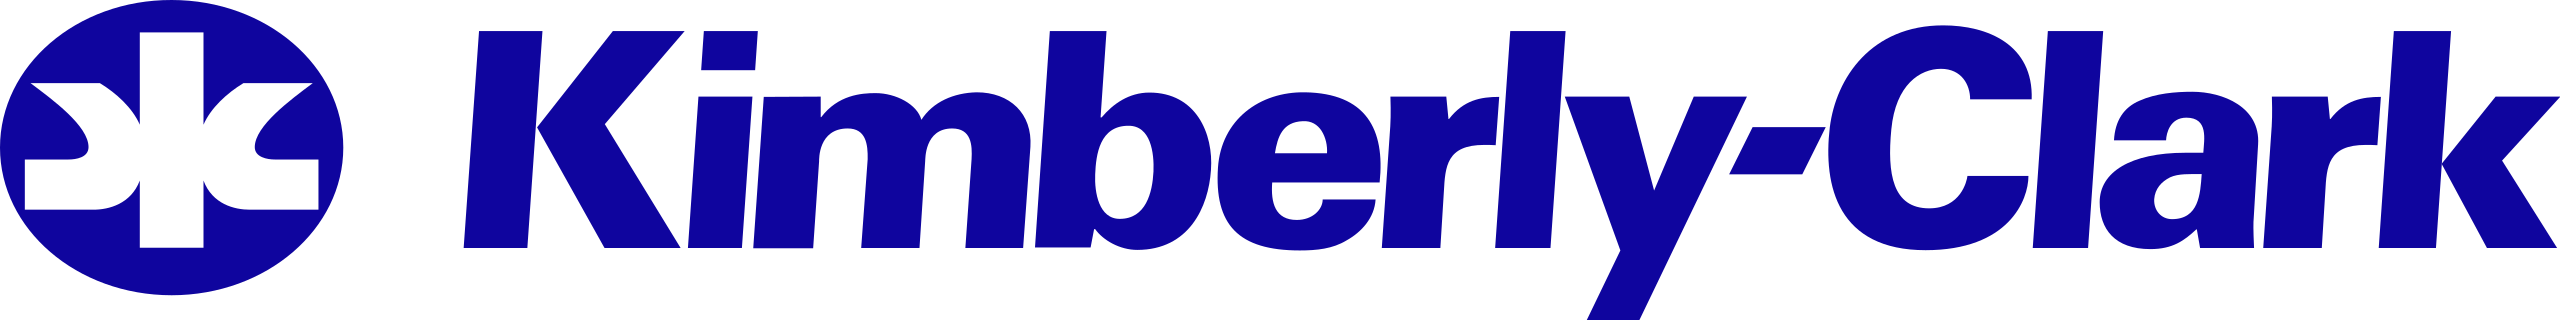 Kimberly-Clark logo